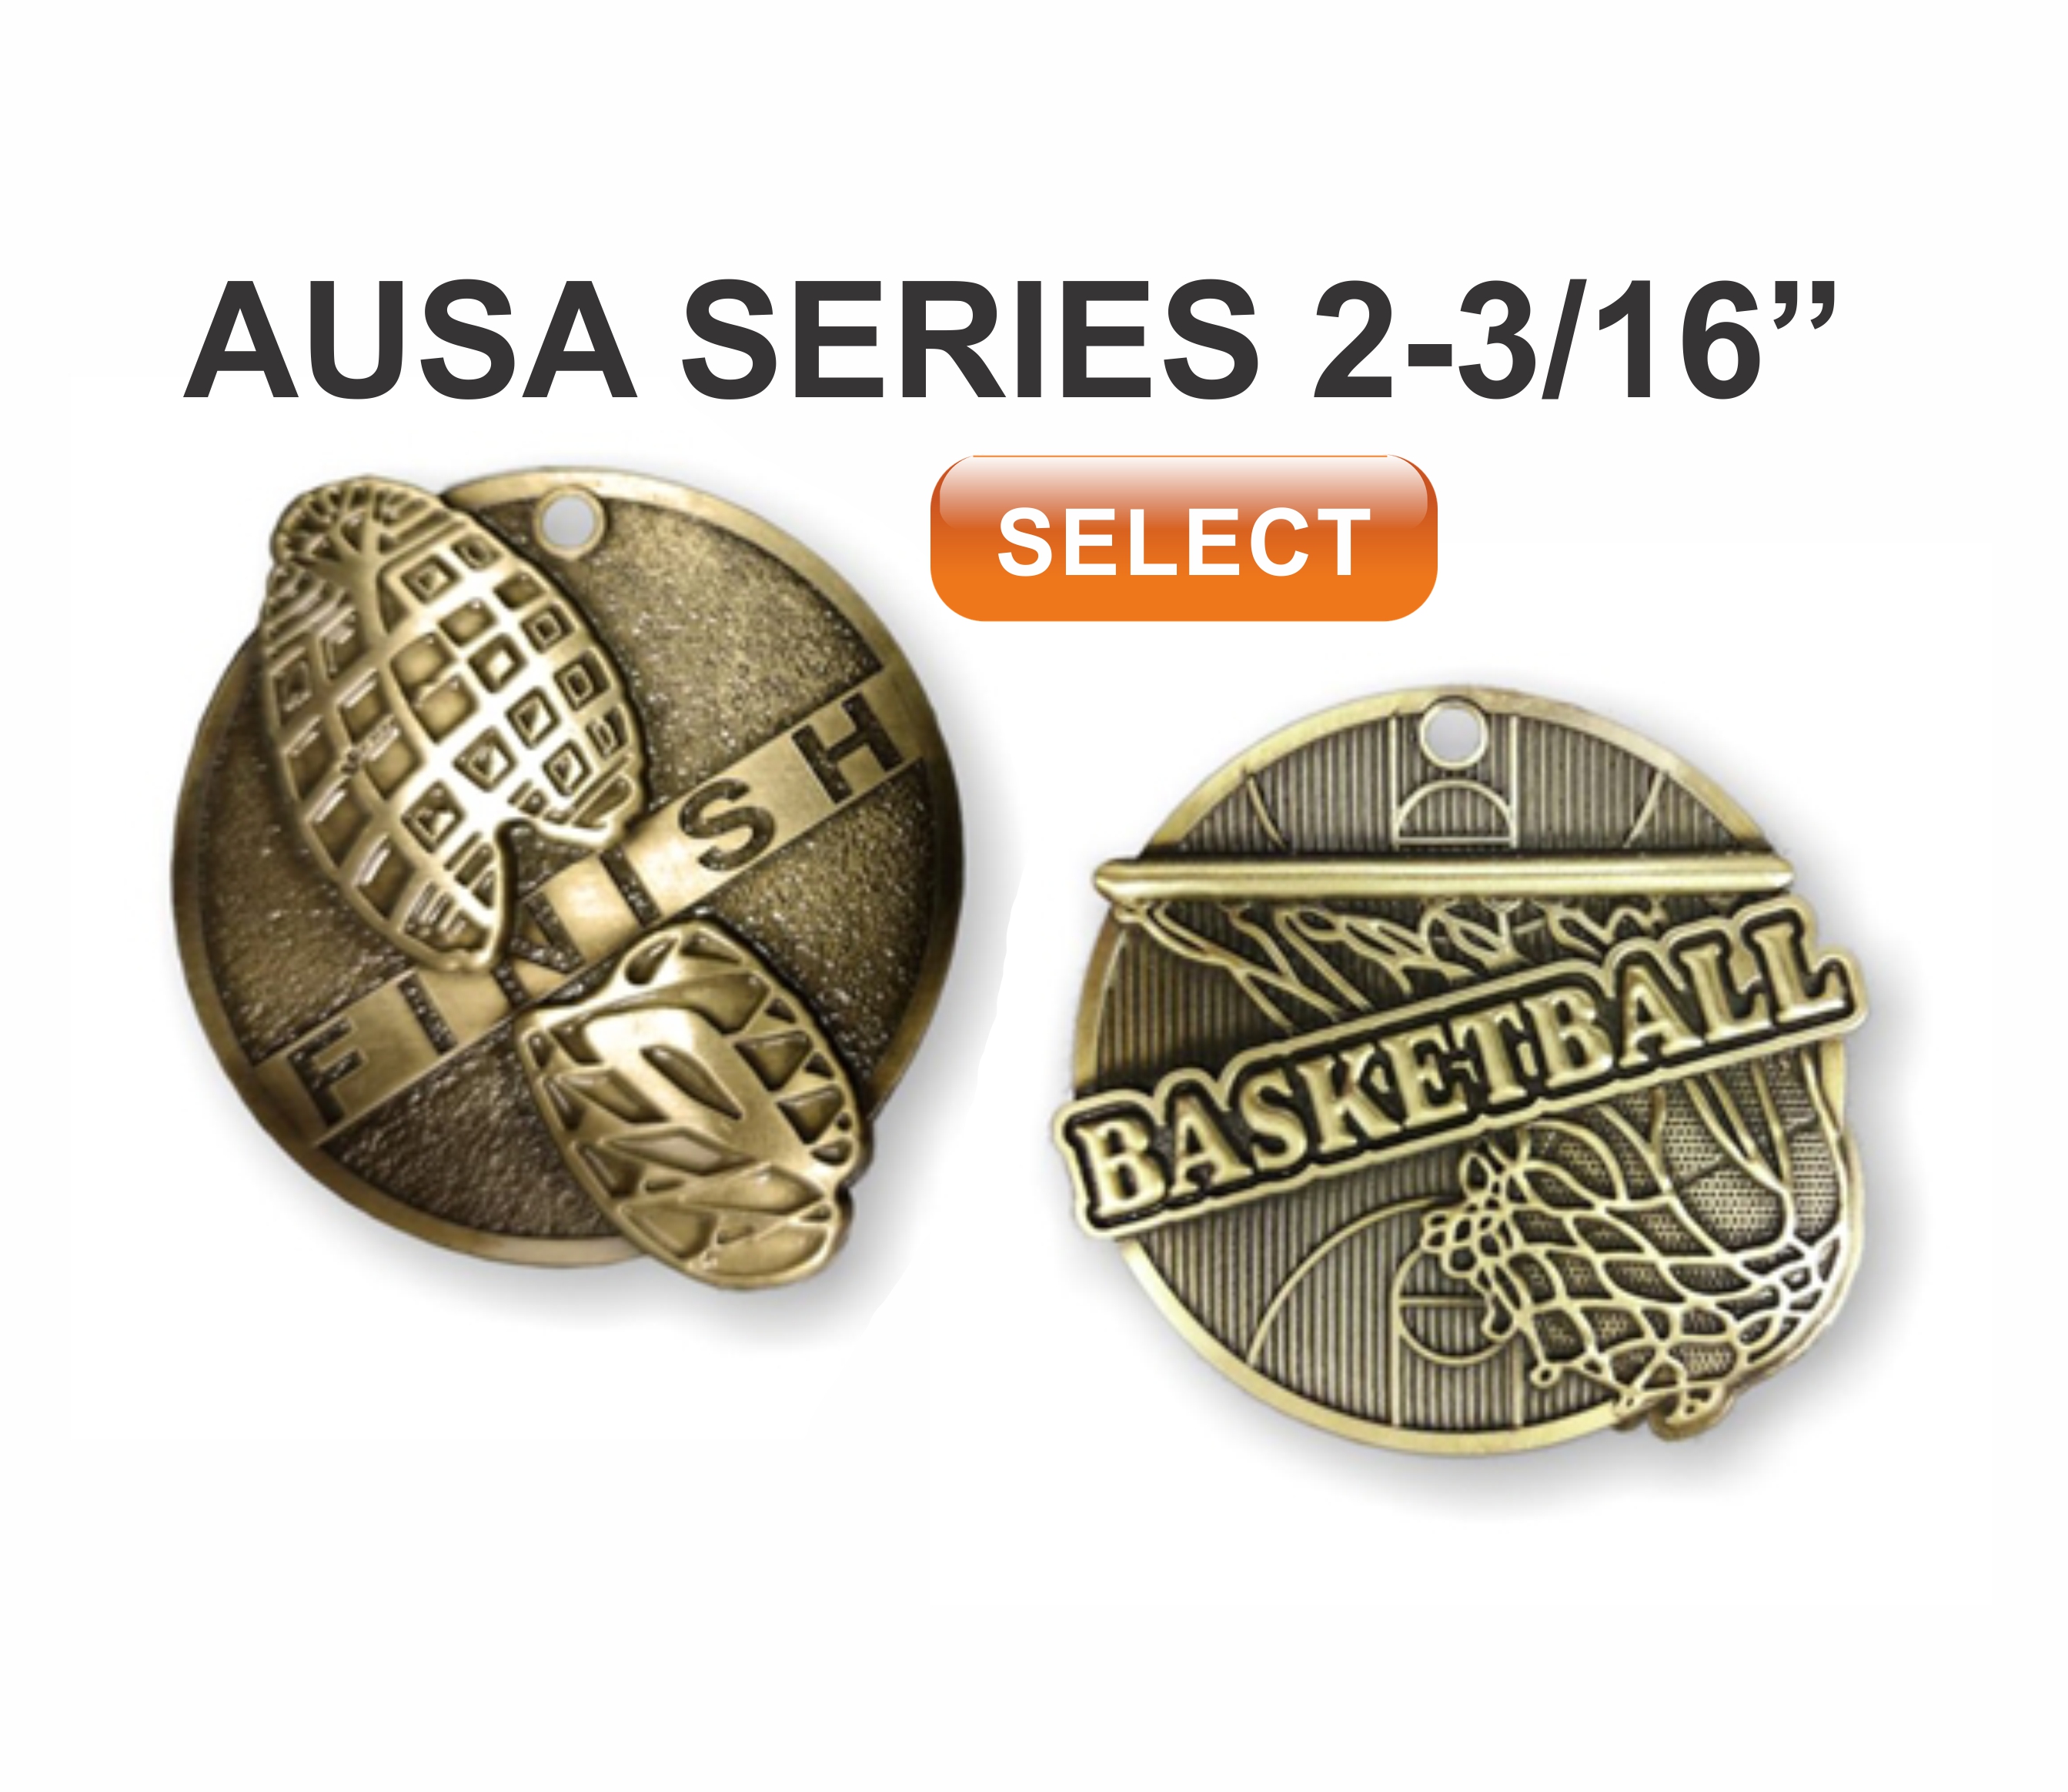 ausa series award medals